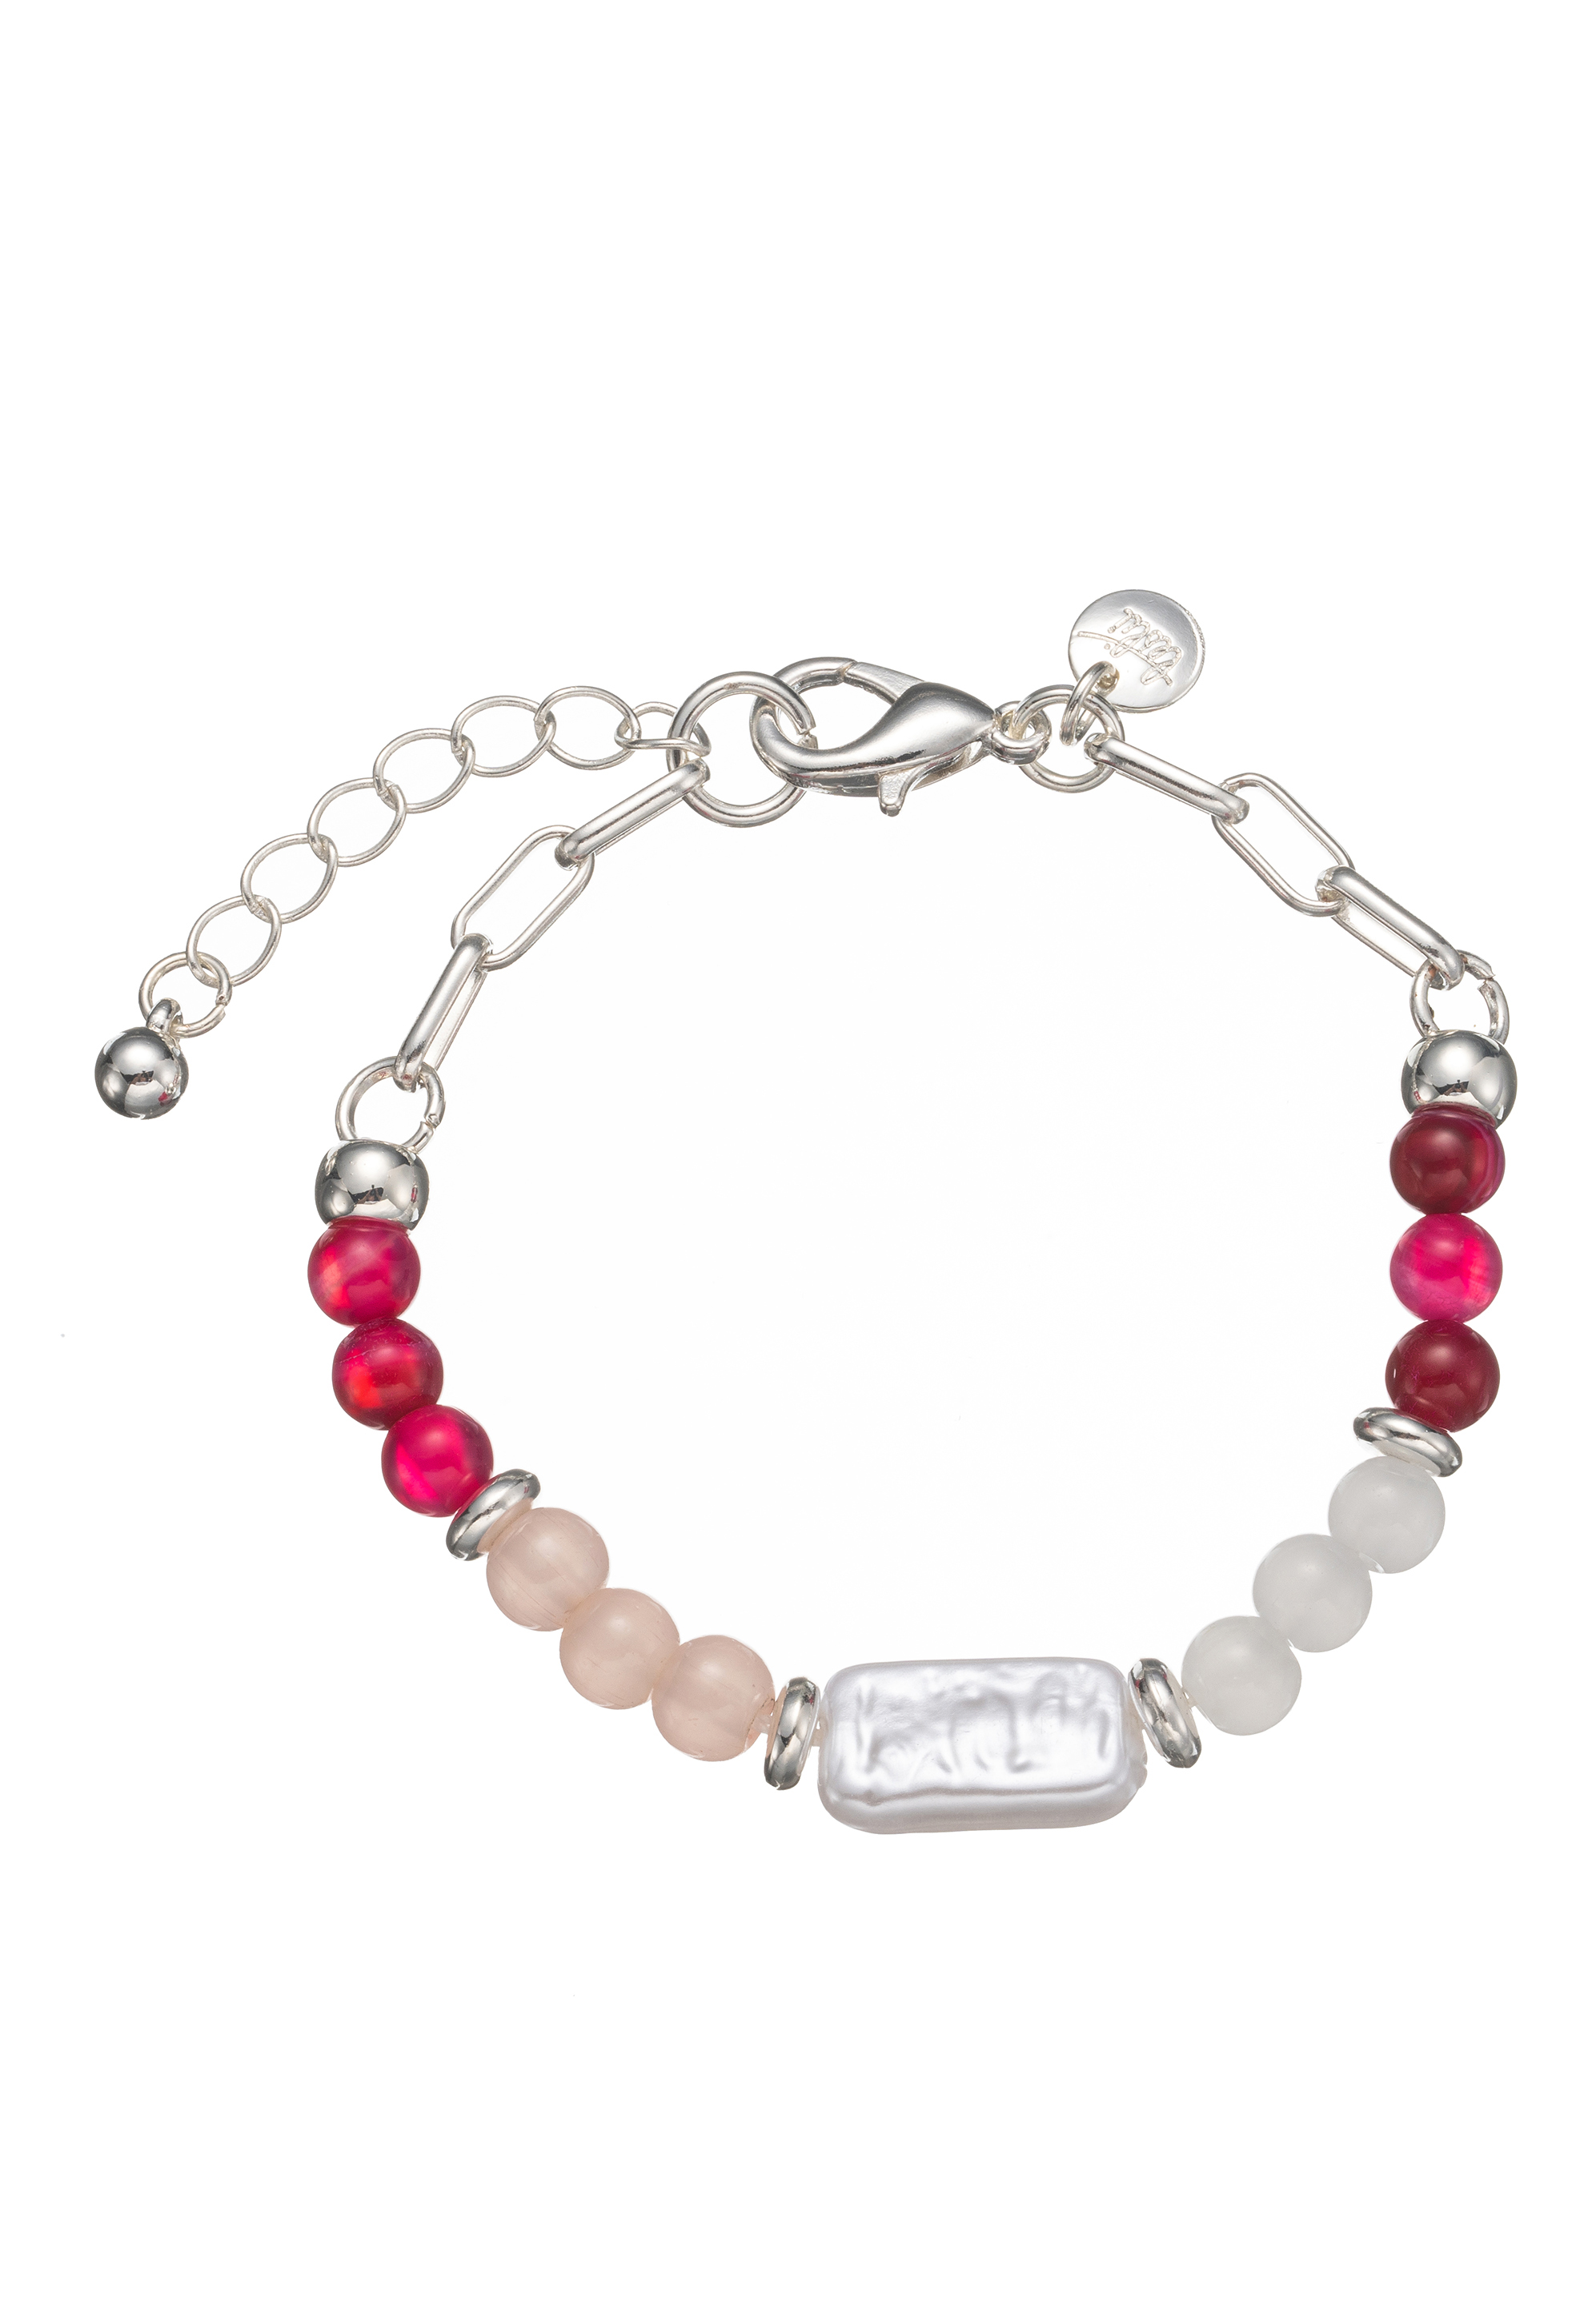 Leslii Armband Perle pink | Online Shop Leslii